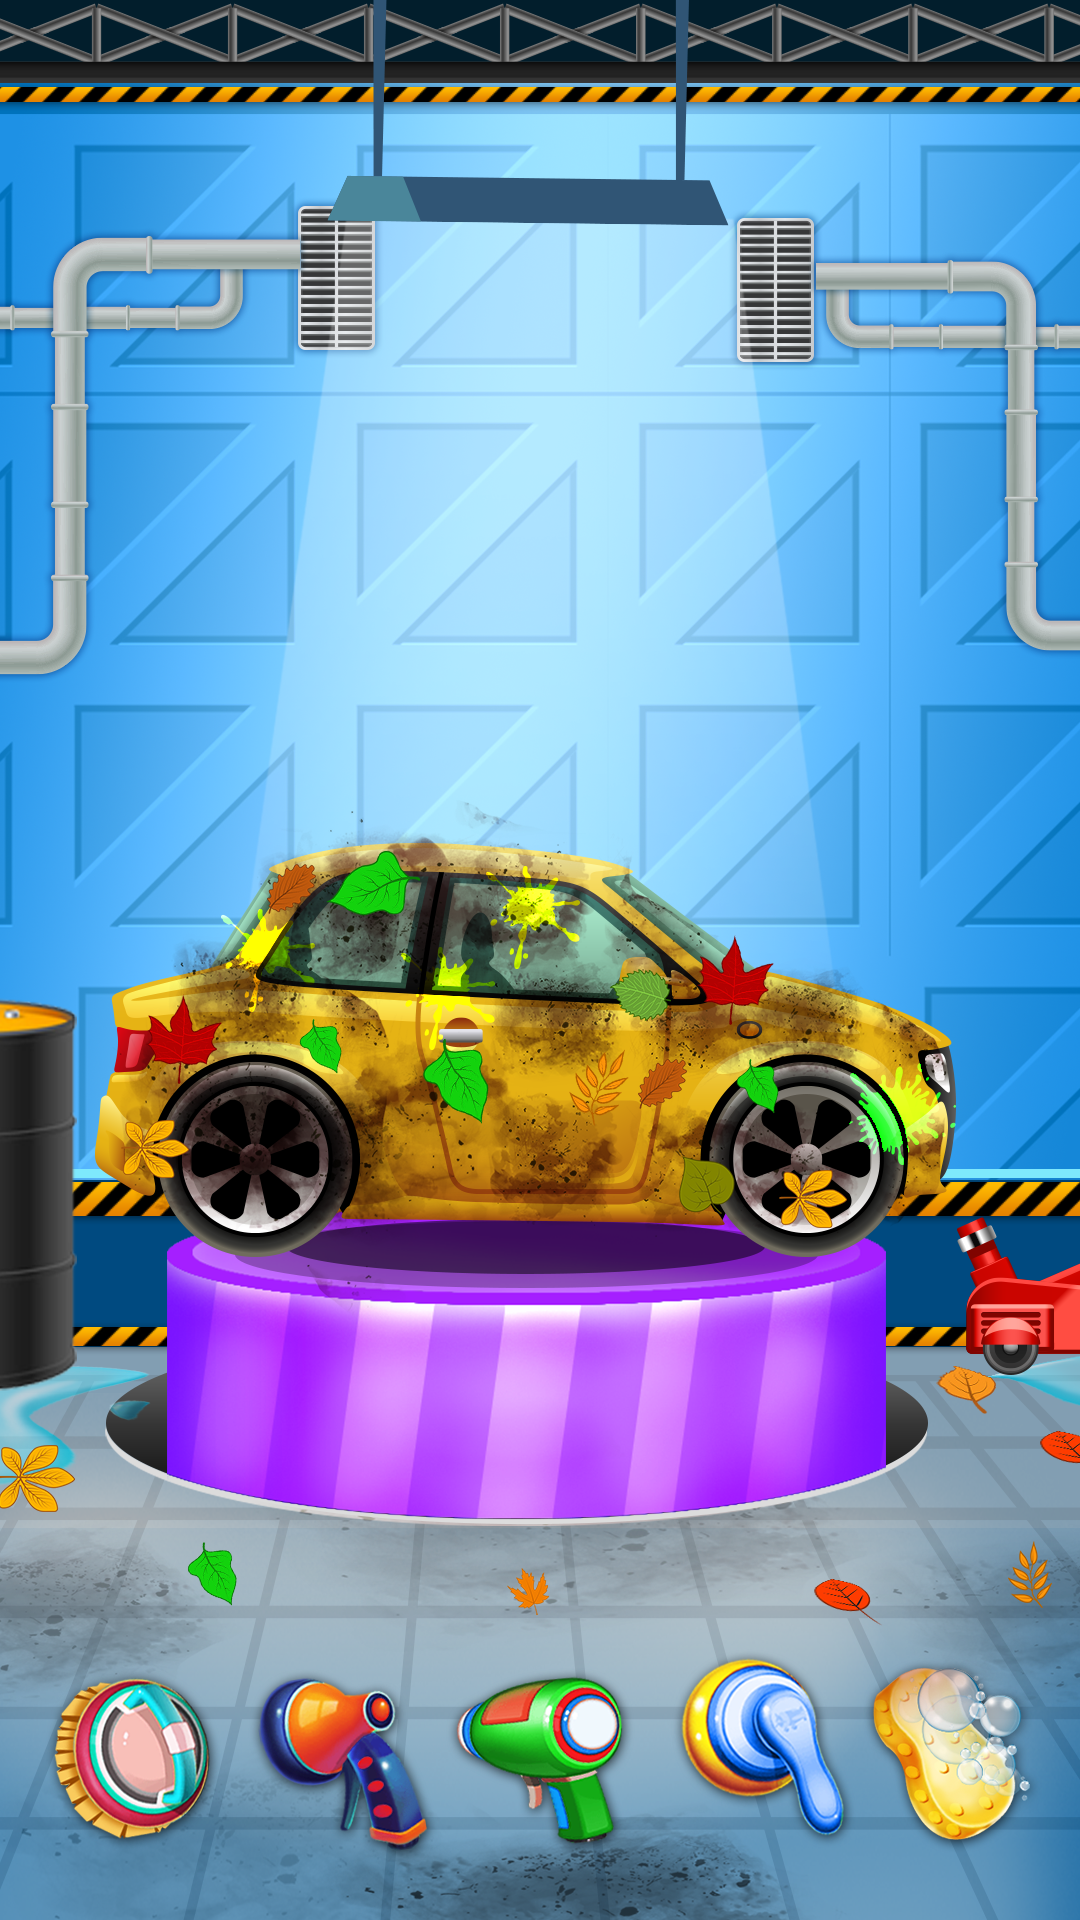 Screenshot 1 of Aking Car Wash Game 2.1